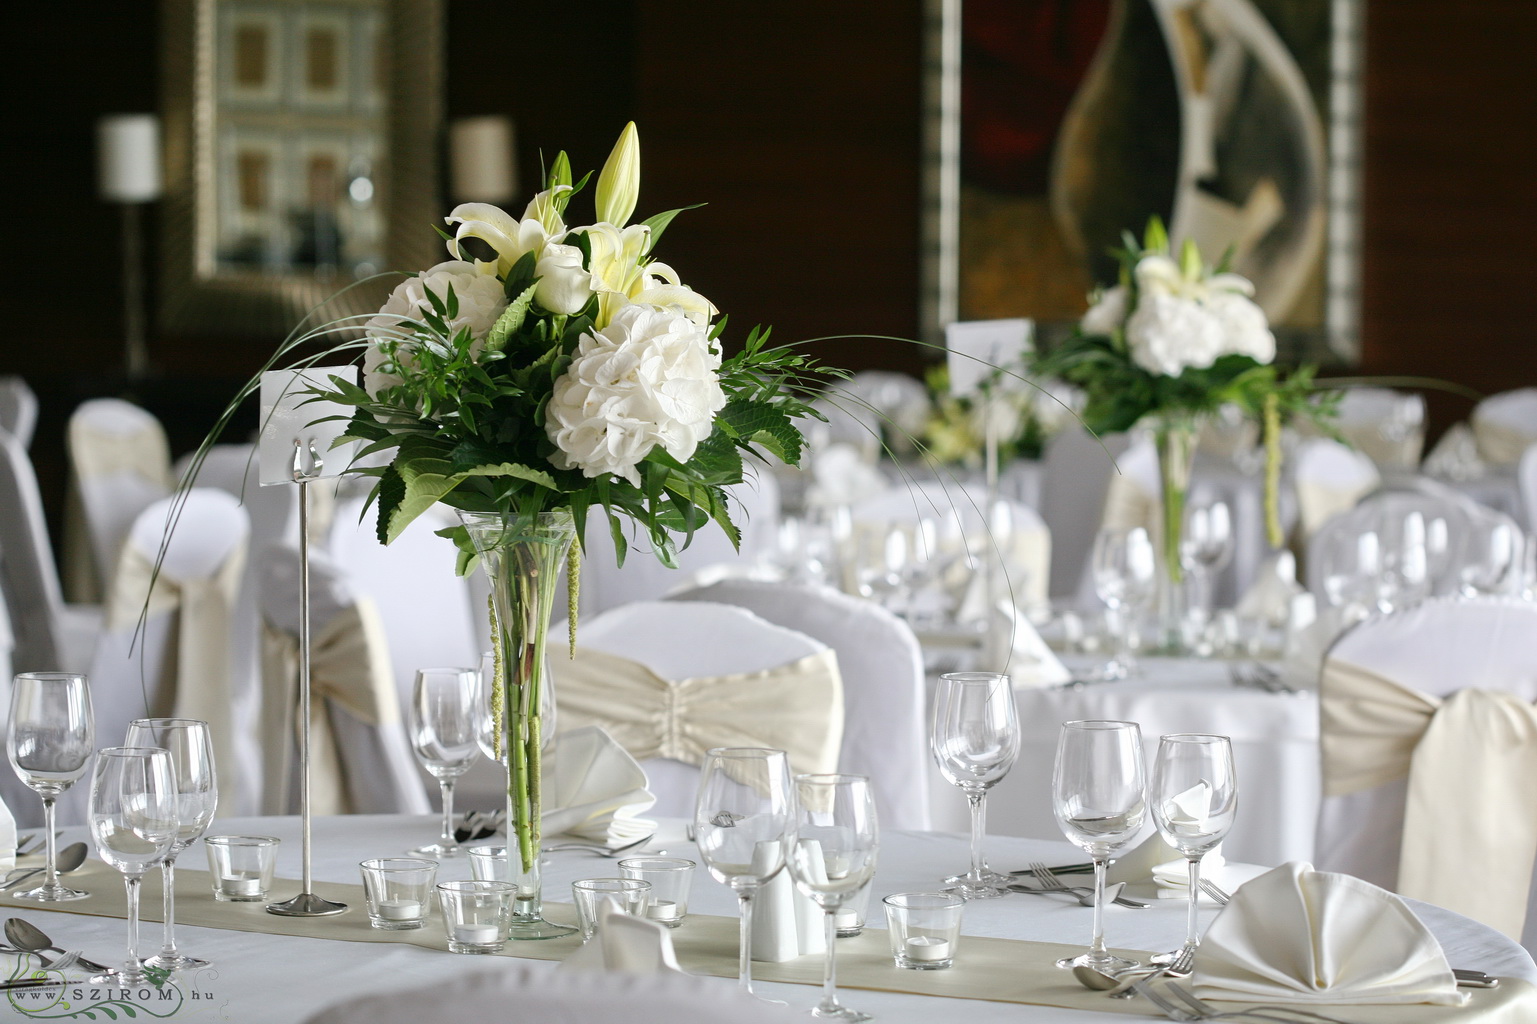 Virágküldés Budapest - Magas vázás asztaldísz fehér liliommal és hortenziával, 1db, Marriott Budapest, esküvő